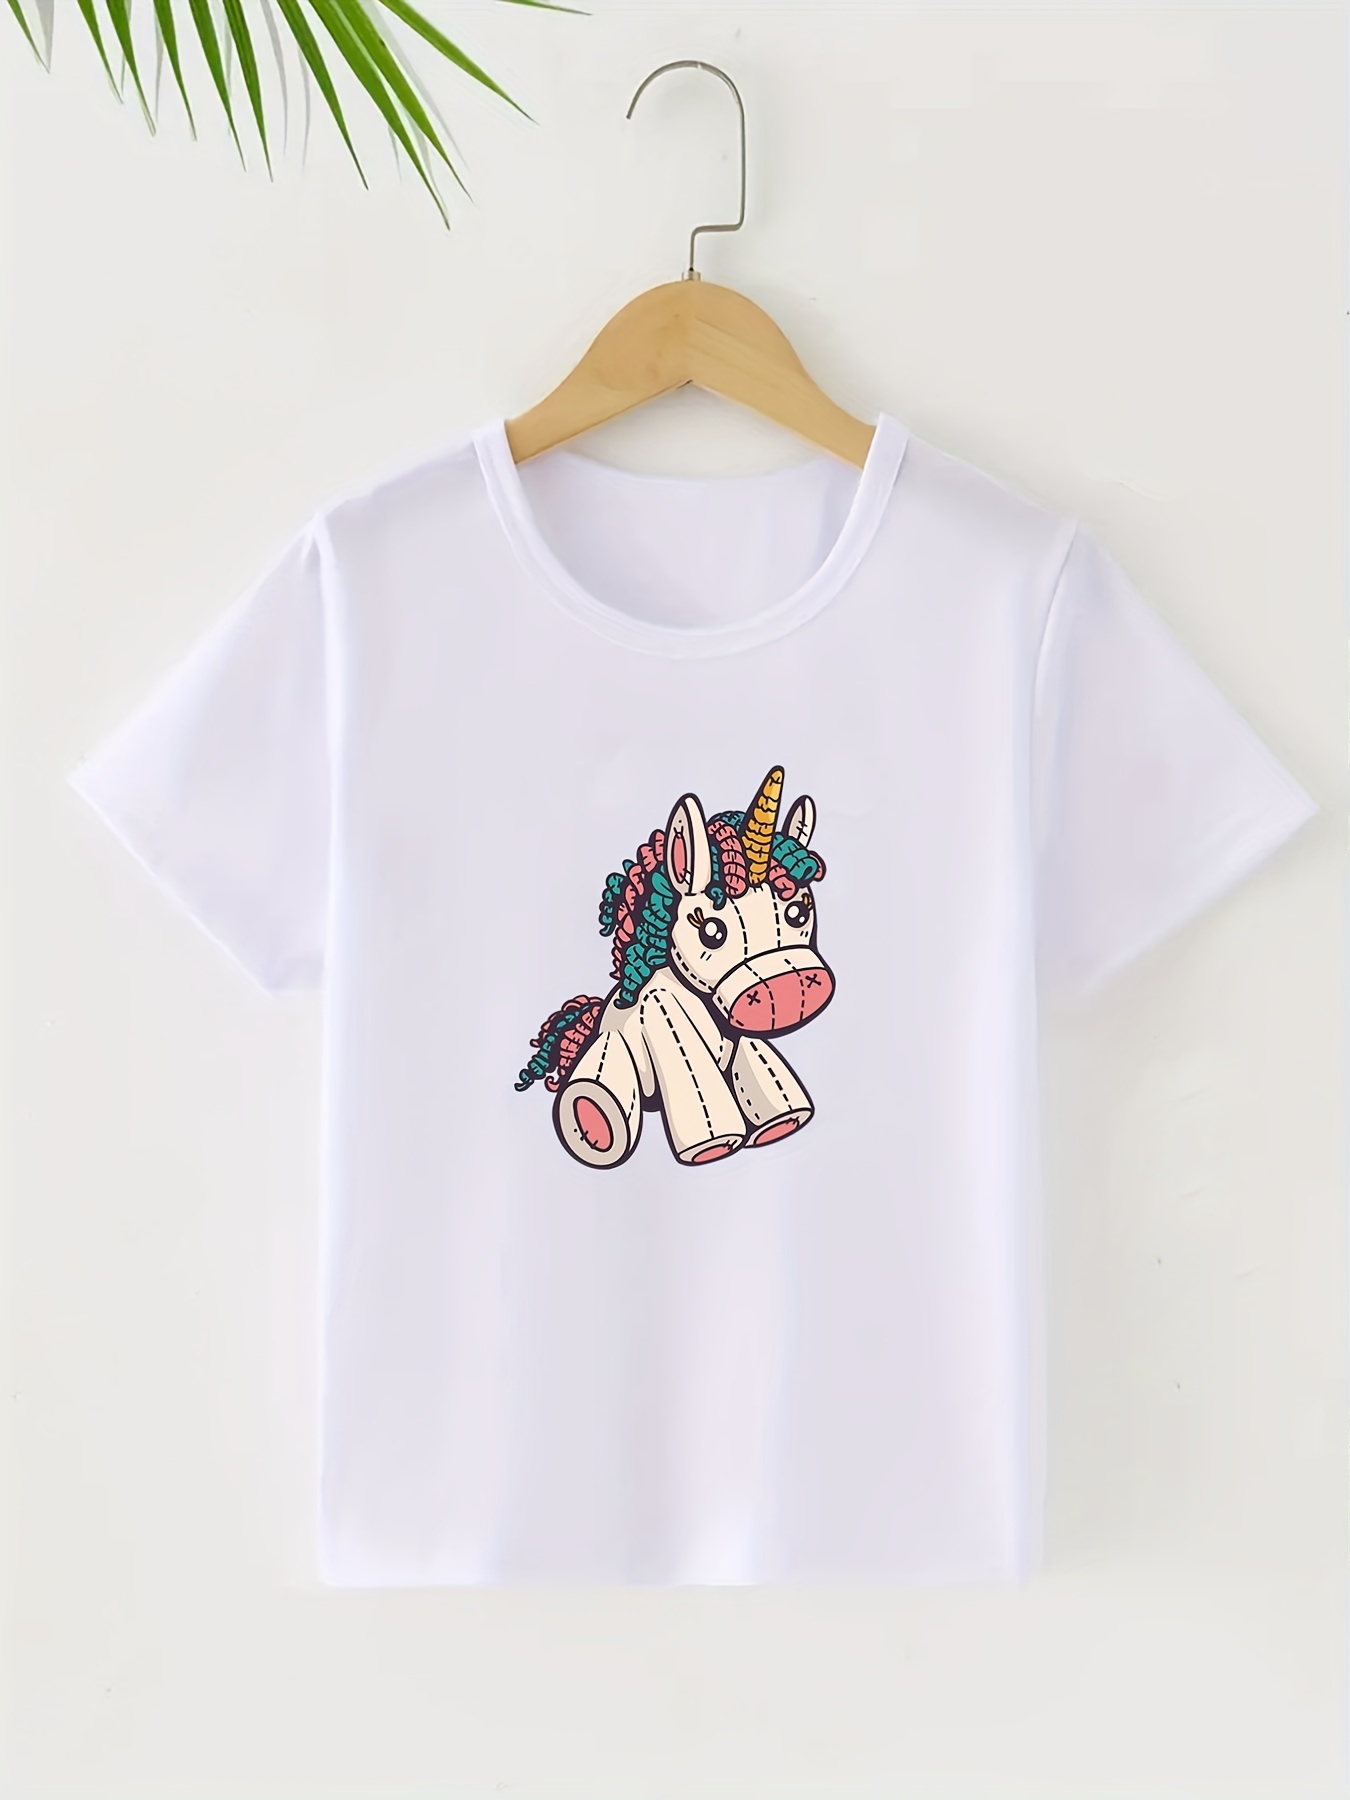 Unicorn Cute Girls T-Shirt Kids Boys Clothes Summer Short Sleeve